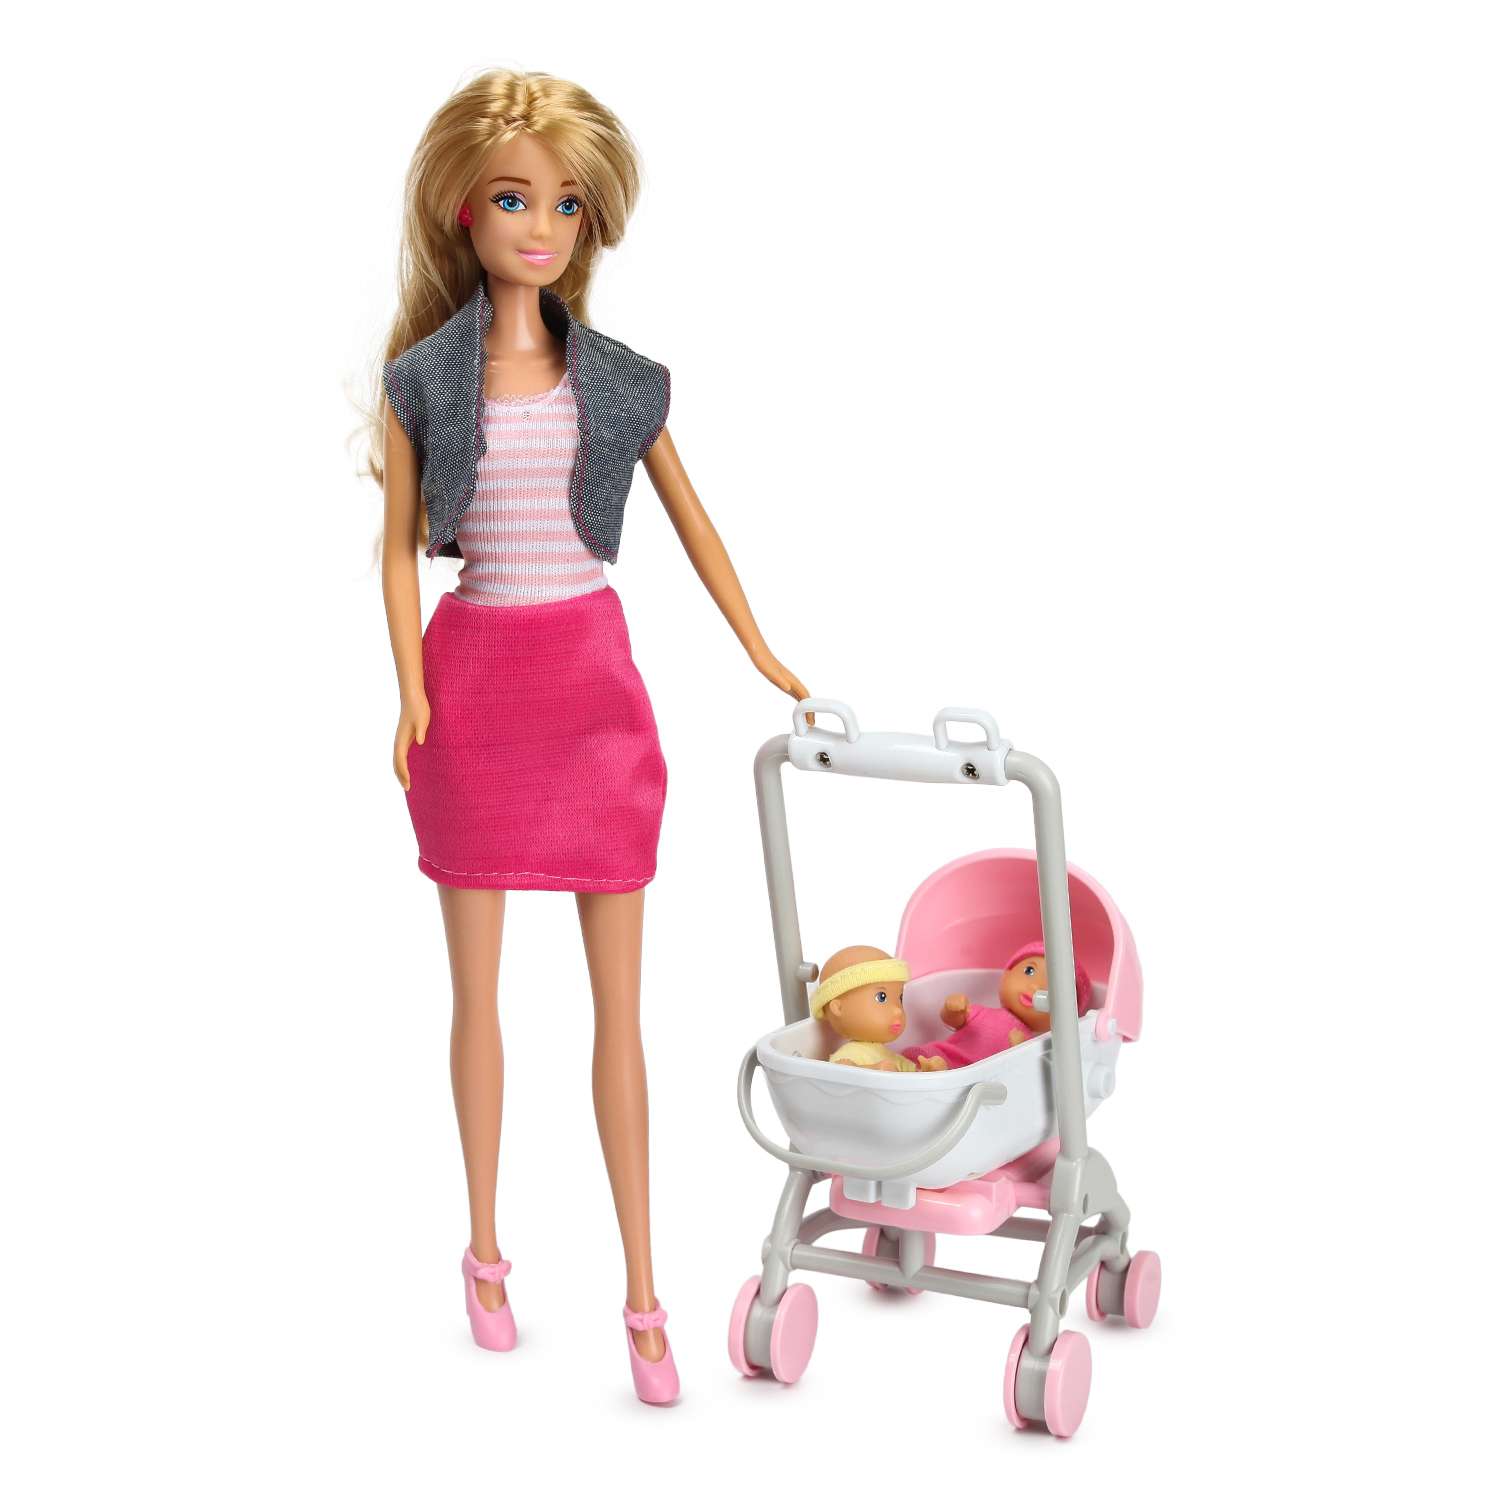 Топ 5 самых прочных и красивых колясок для ваших кукол мини-реборнов и Барби!